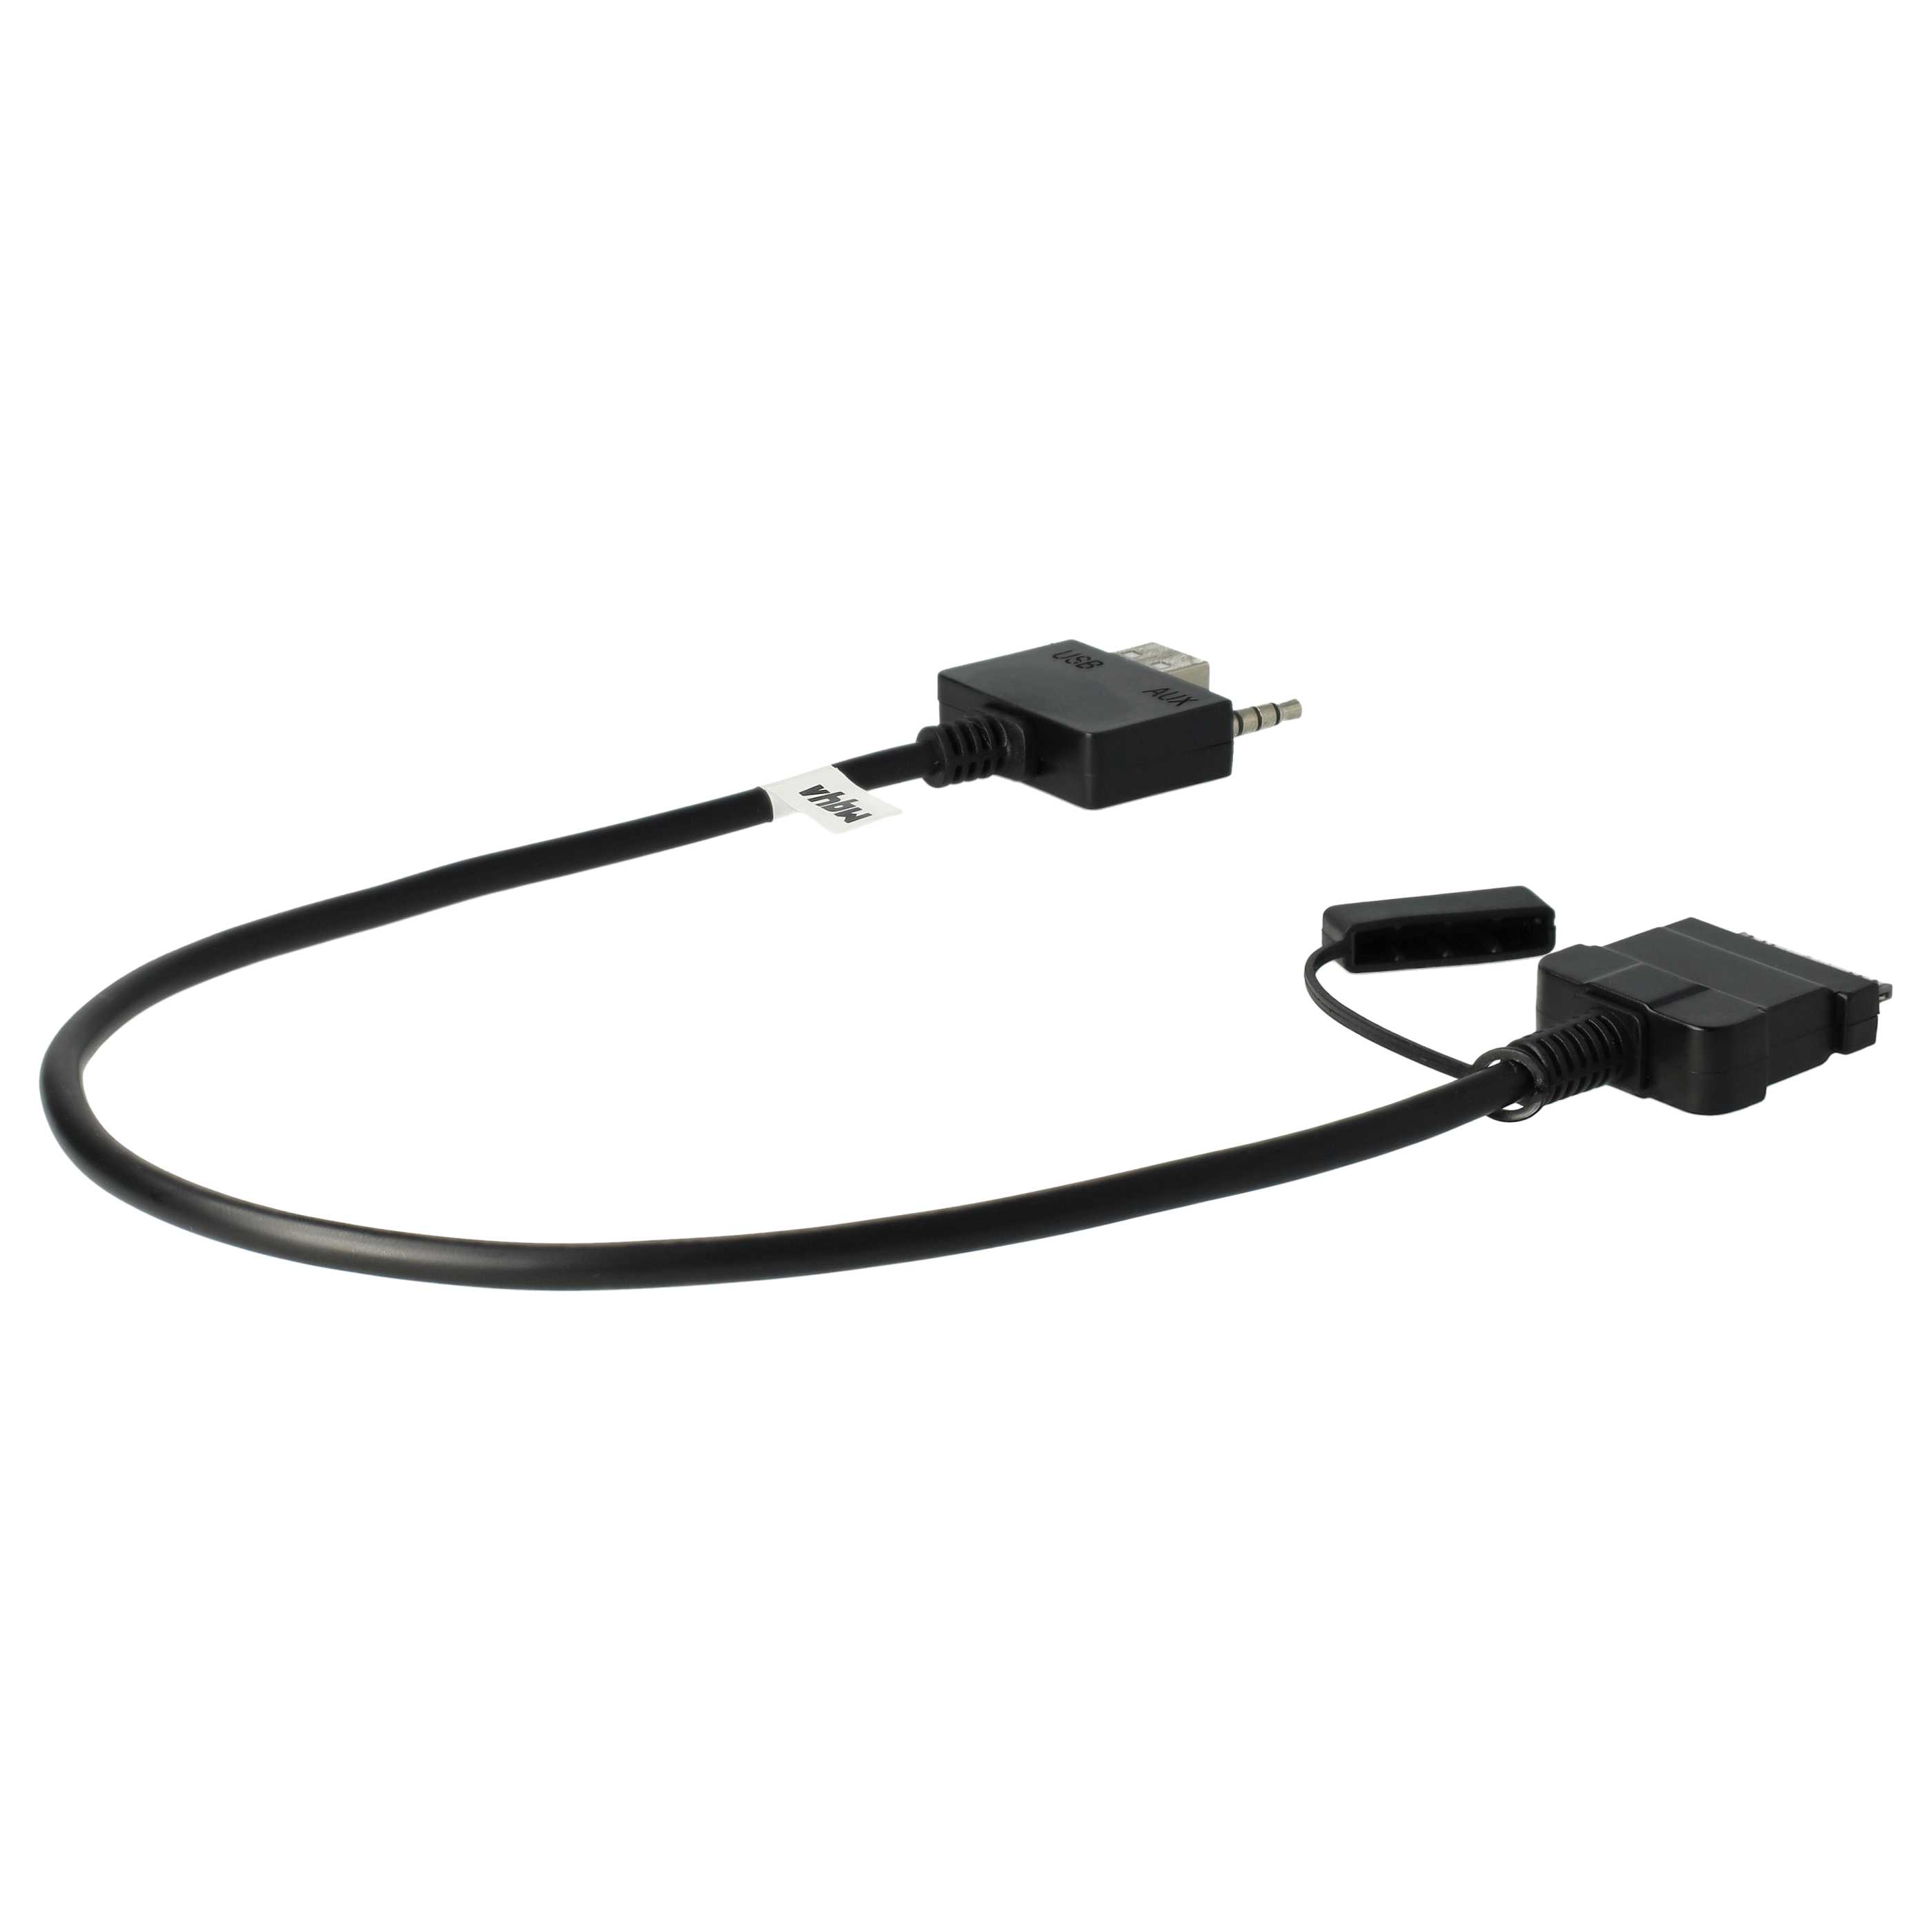 Kabel AUX do radia samochodowego Hyundai, Kia, Apple i in. zam. 9999Z-01160, 96125-1H500 - USB